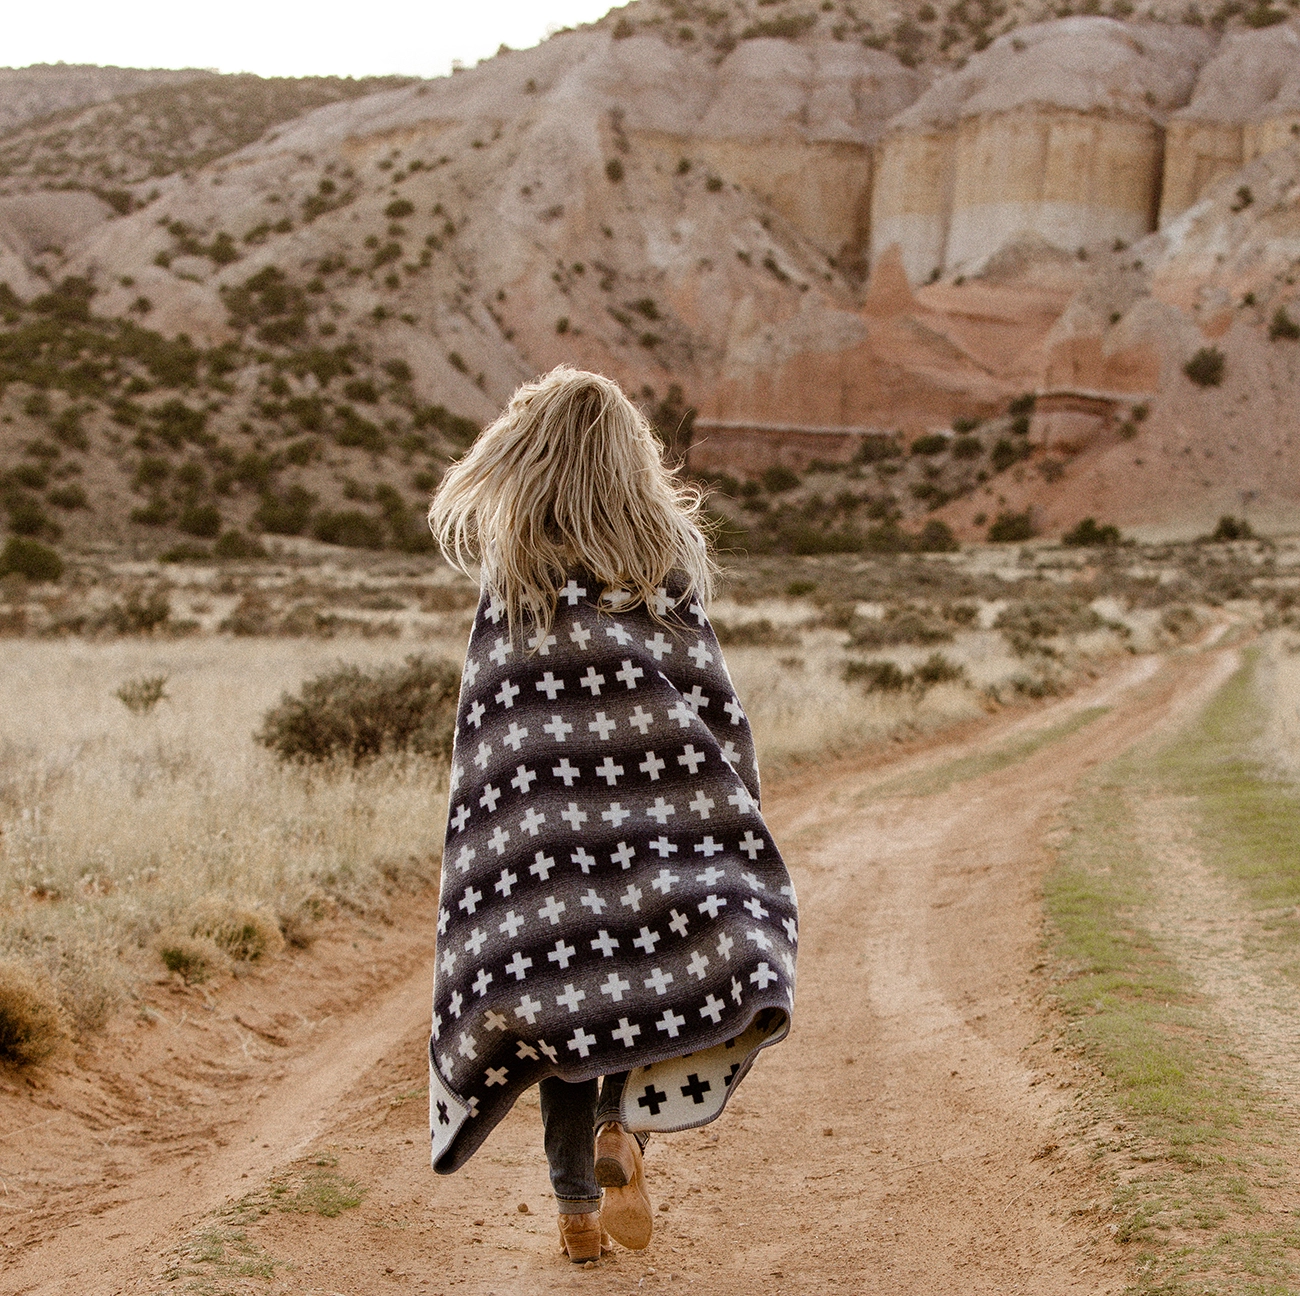 Woman walks towards beautiful rocks in a desert